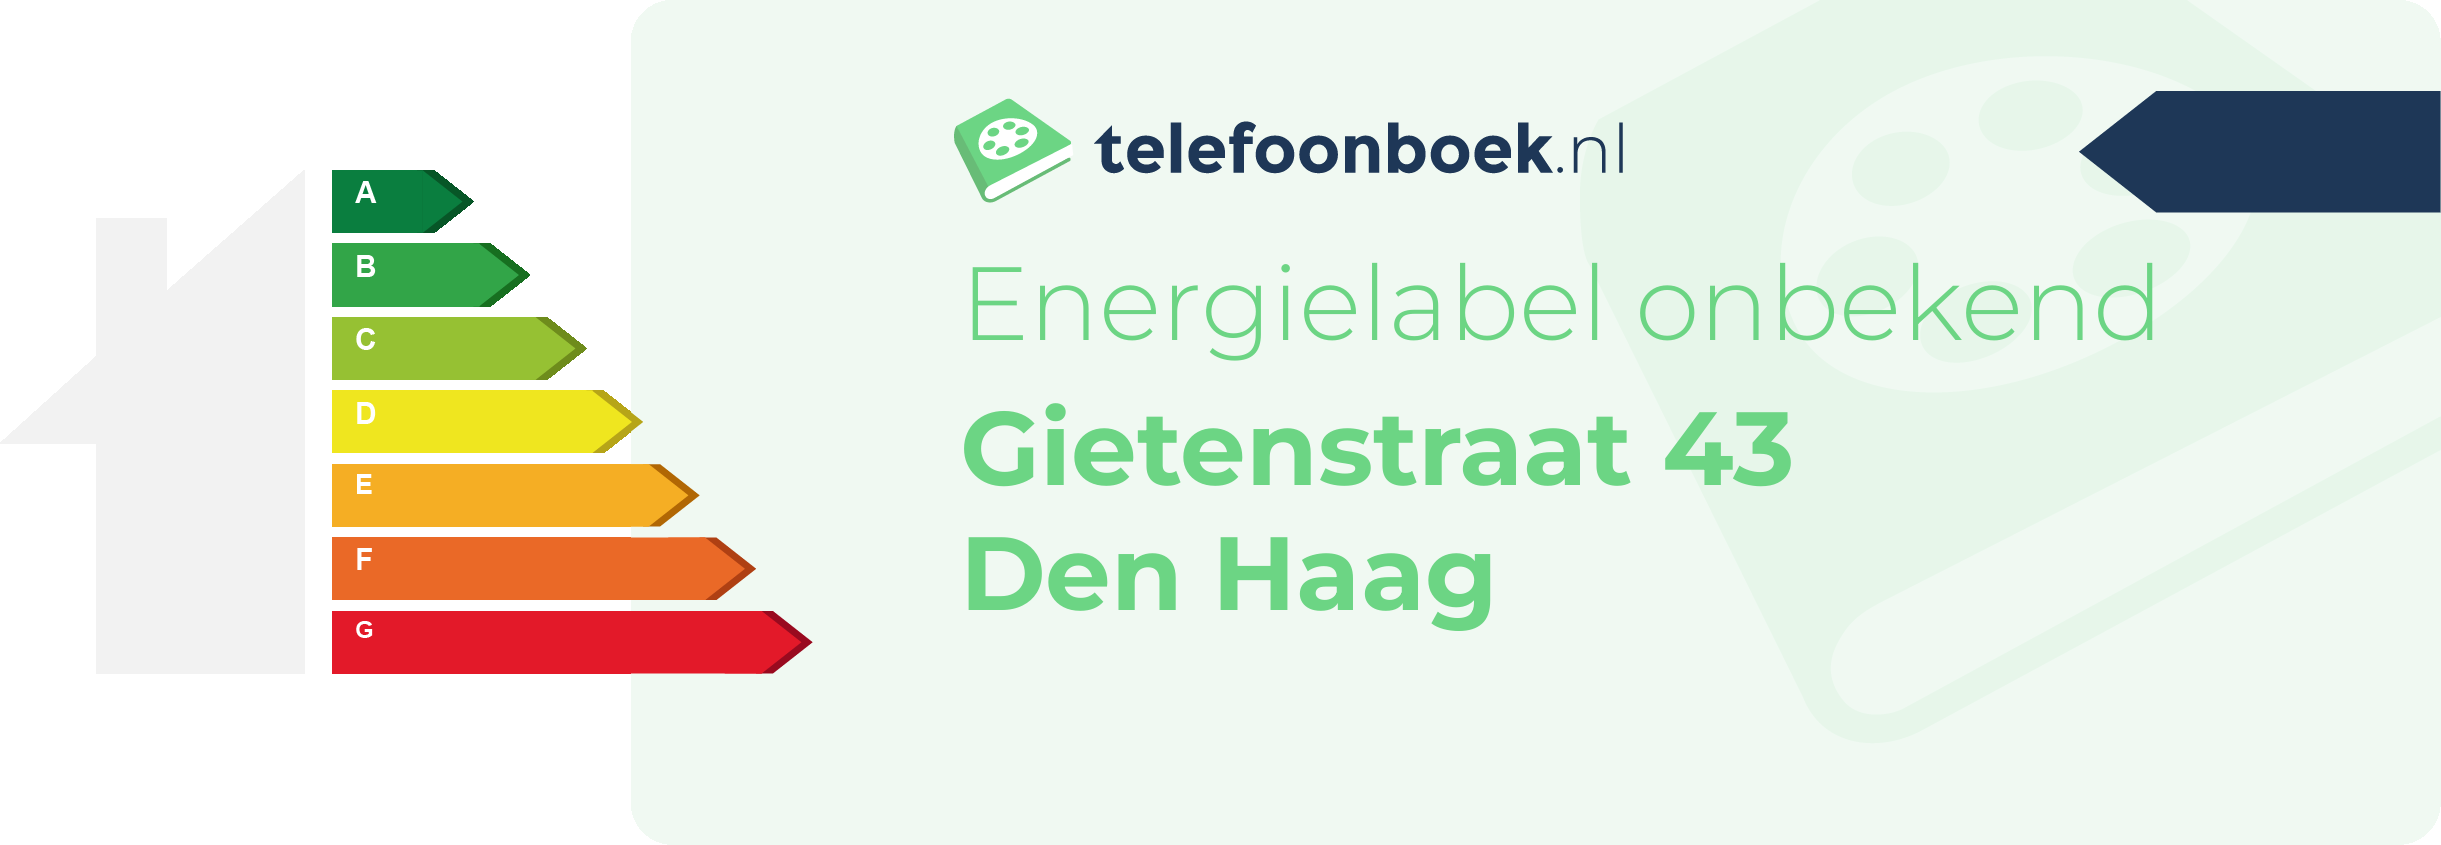 Energielabel Gietenstraat 43 Den Haag